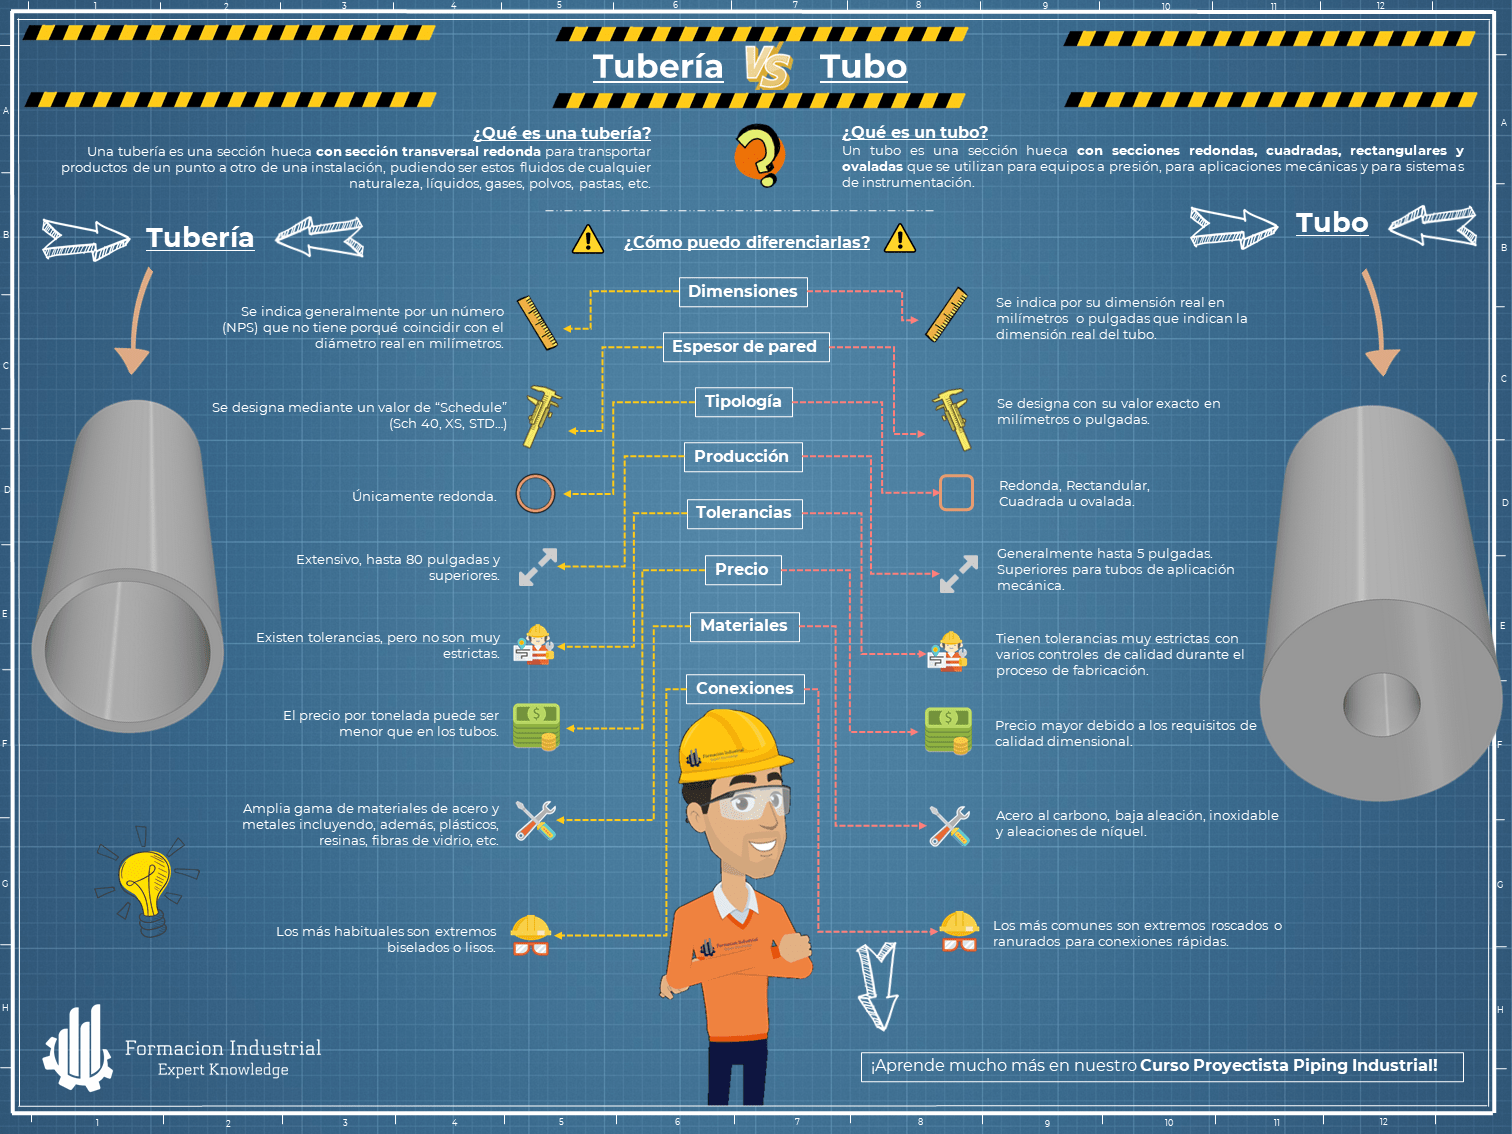 Infografía detallando las diferencias y aplicaciones específicas de tubería y tubo en la industria.